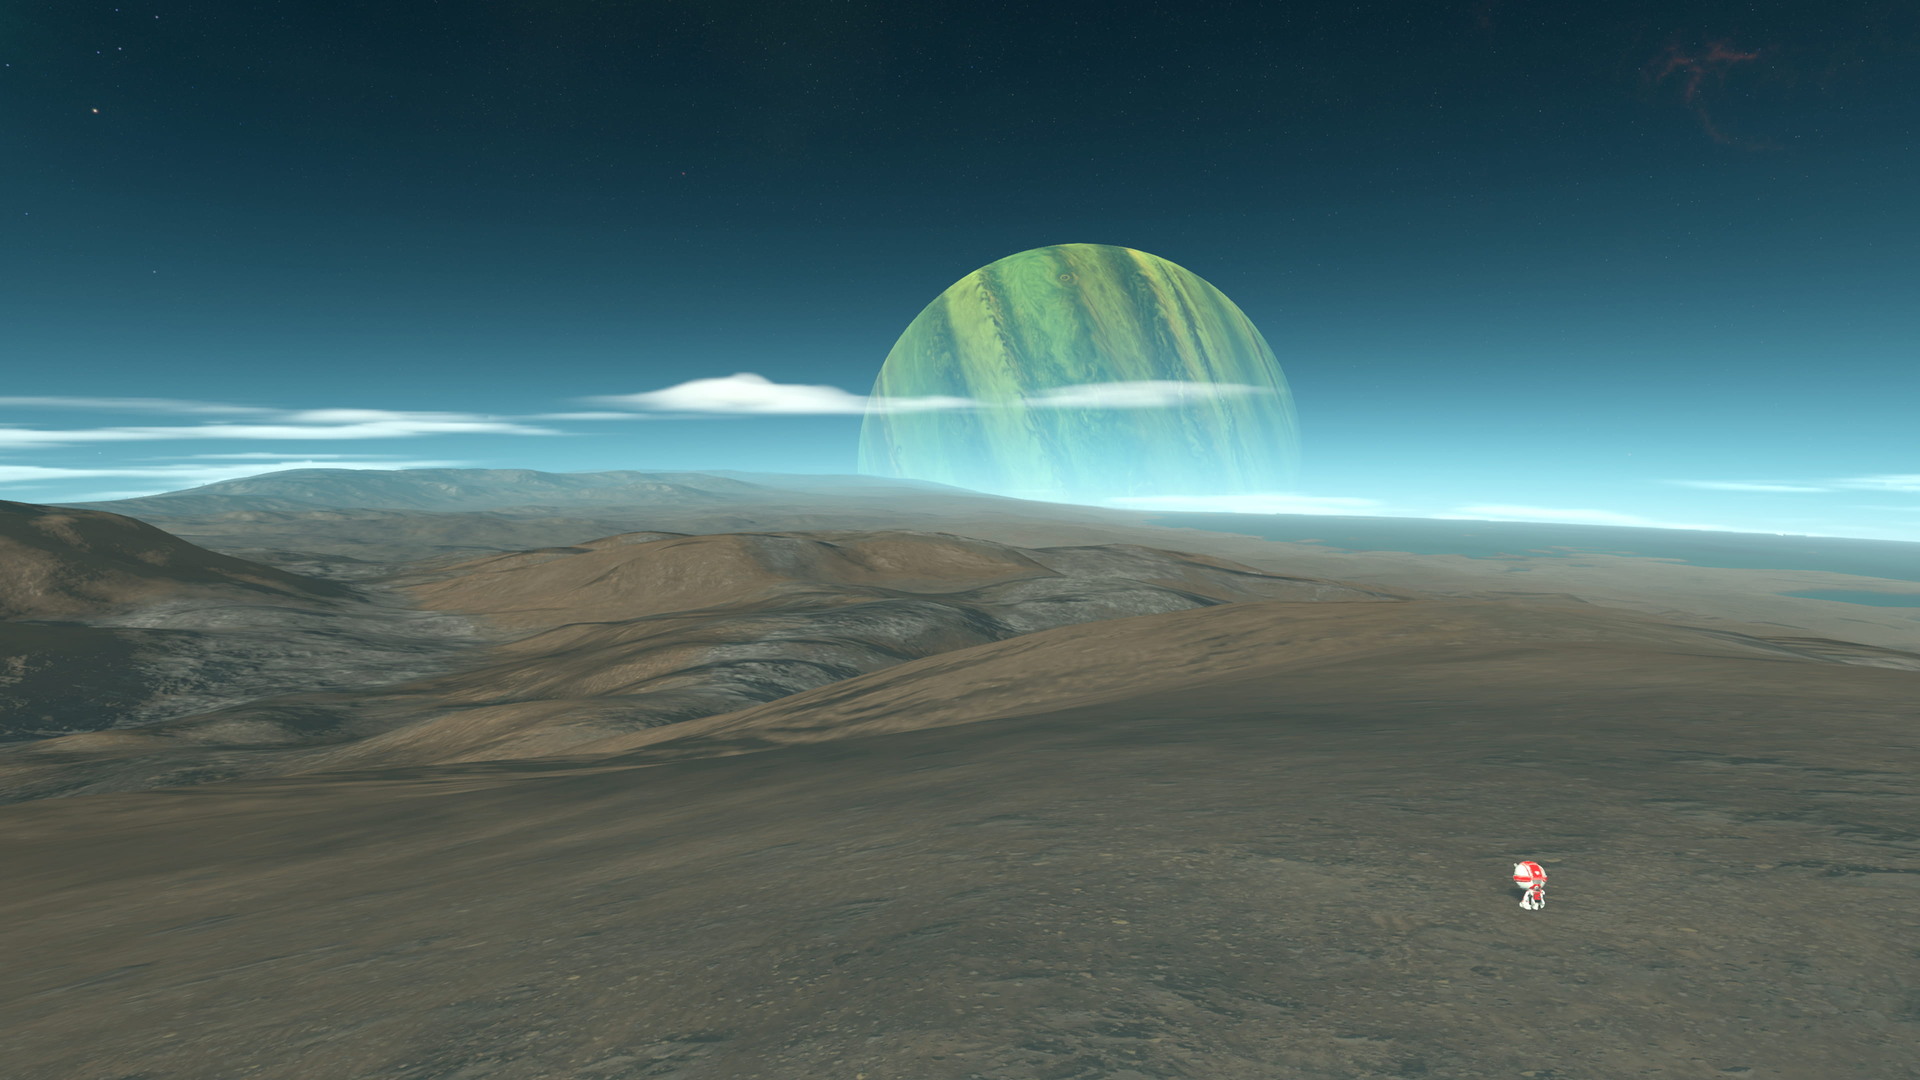 Kerbal Space Program 2 - screenshot 20